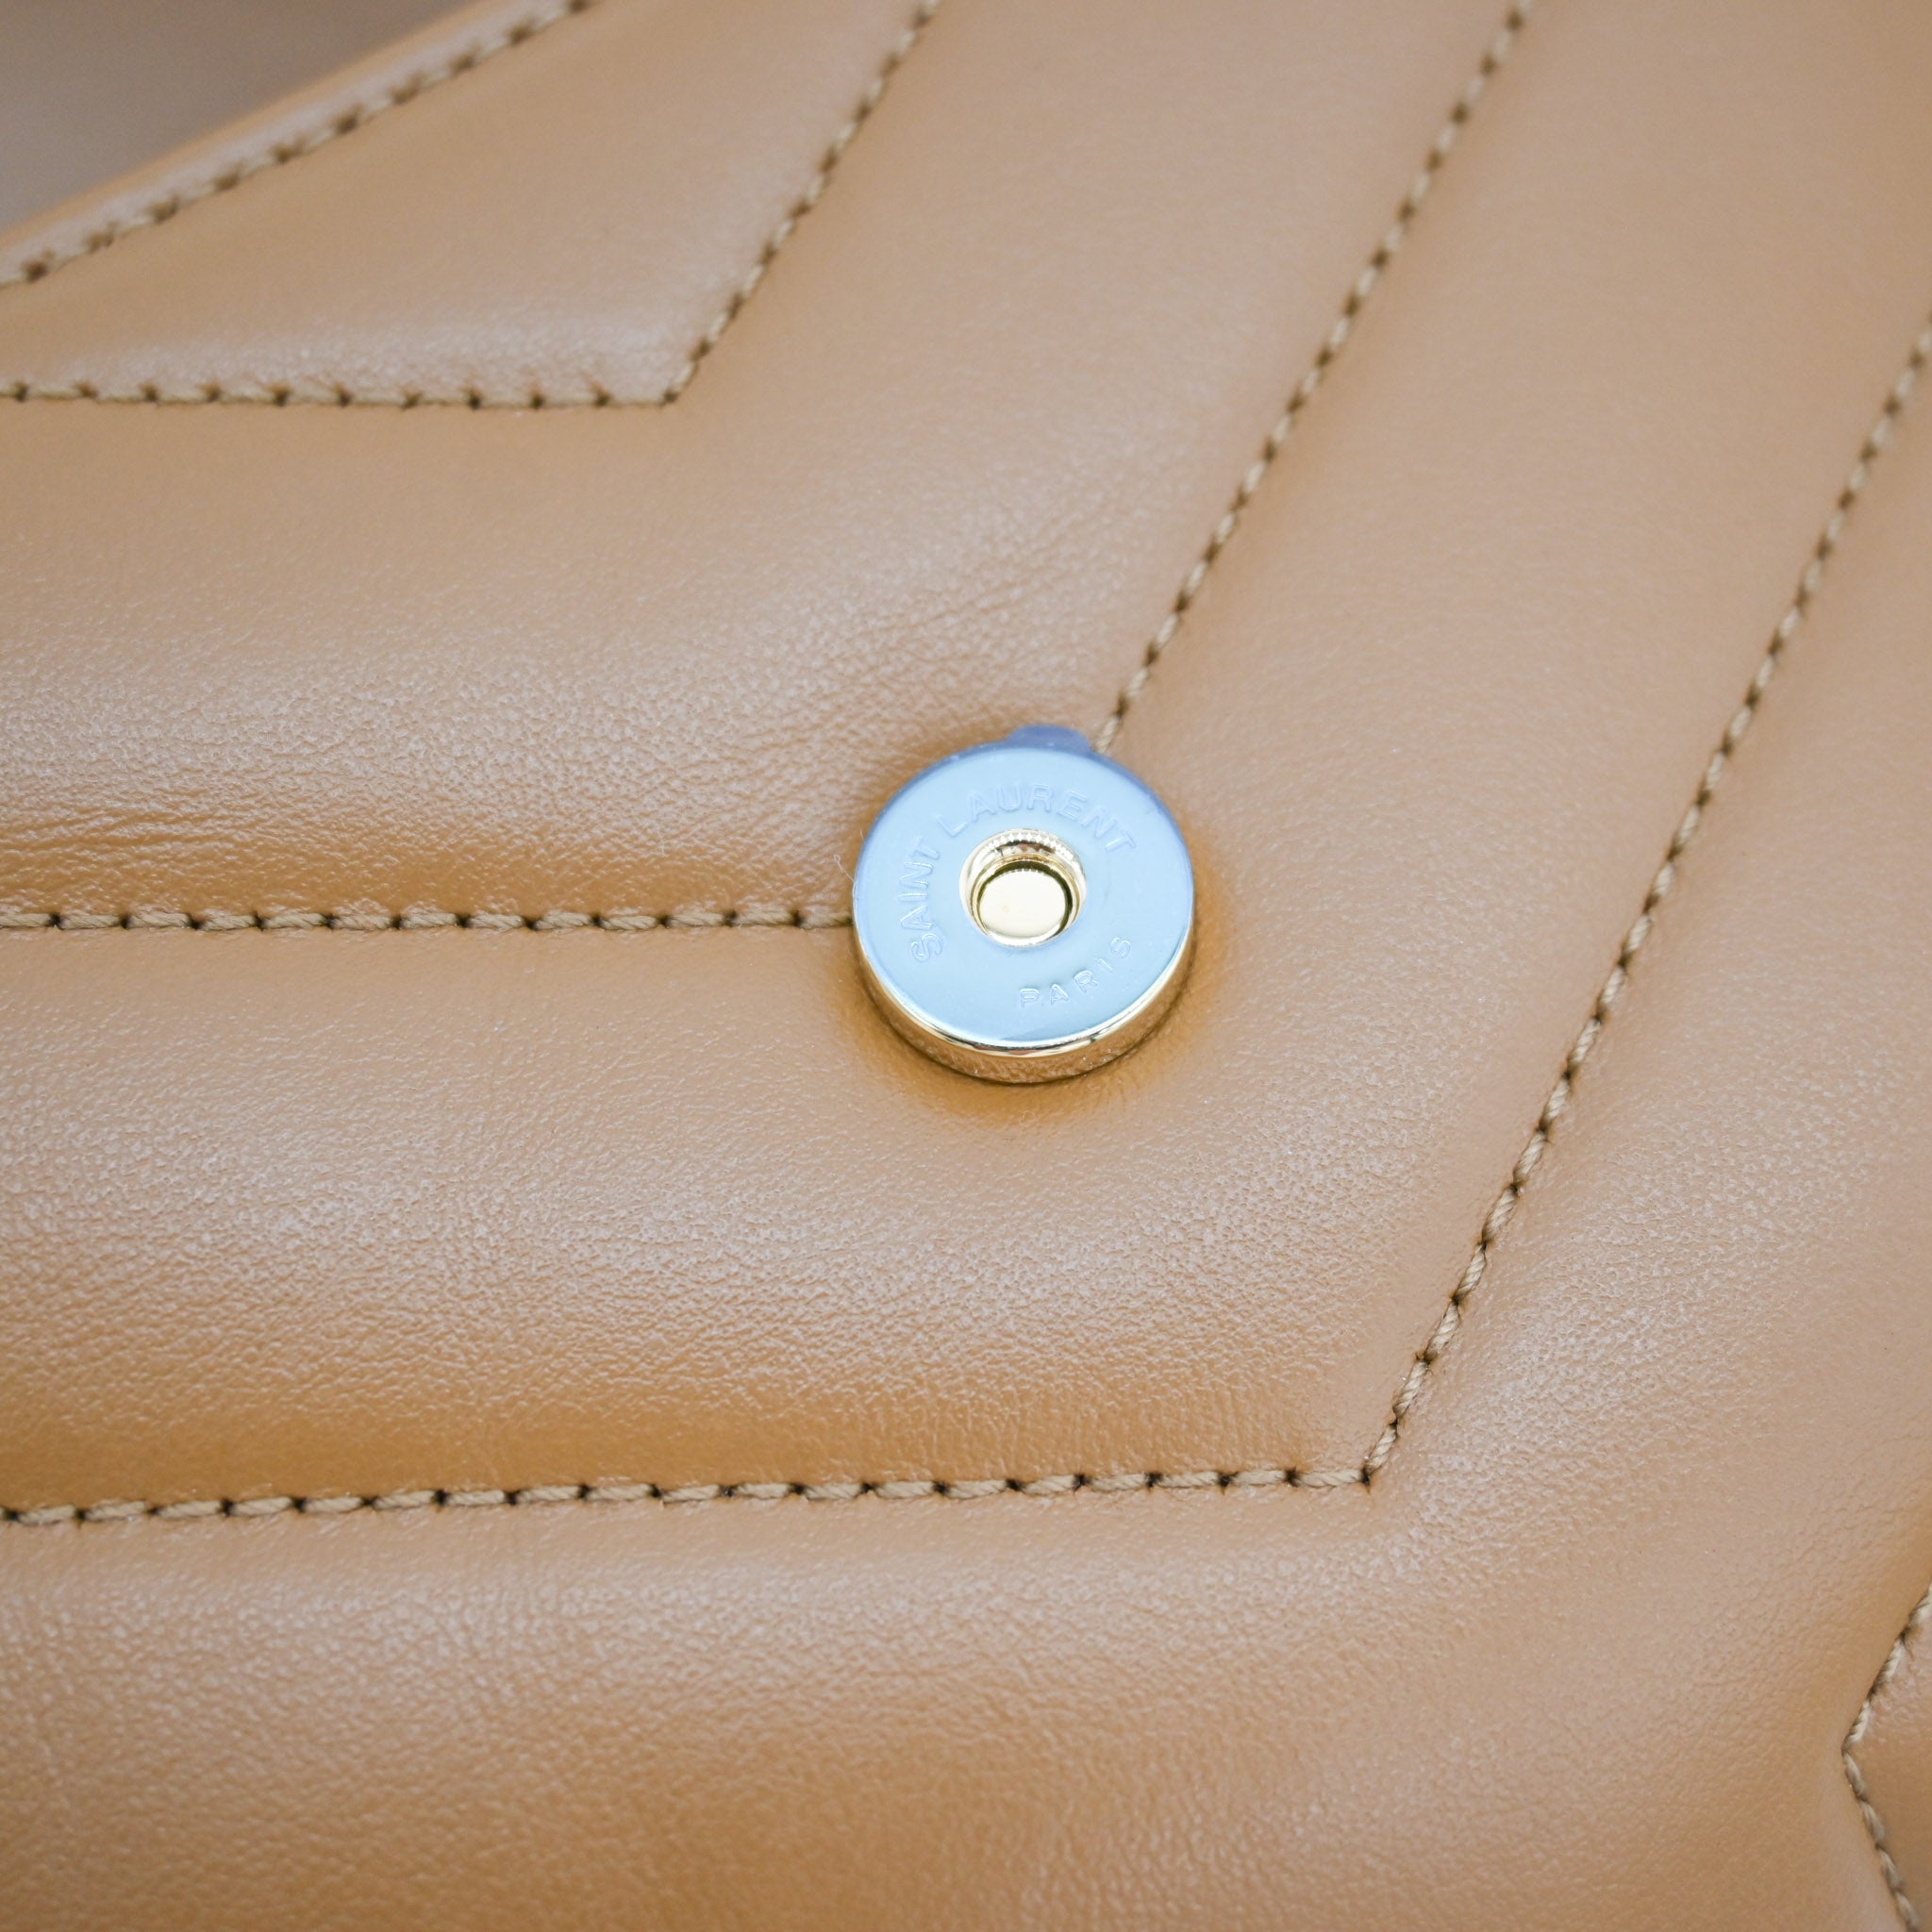 Saint Laurent Toy LouLou Crossbody Natural Tan - Vault 55 | Preowned Designer Handbags